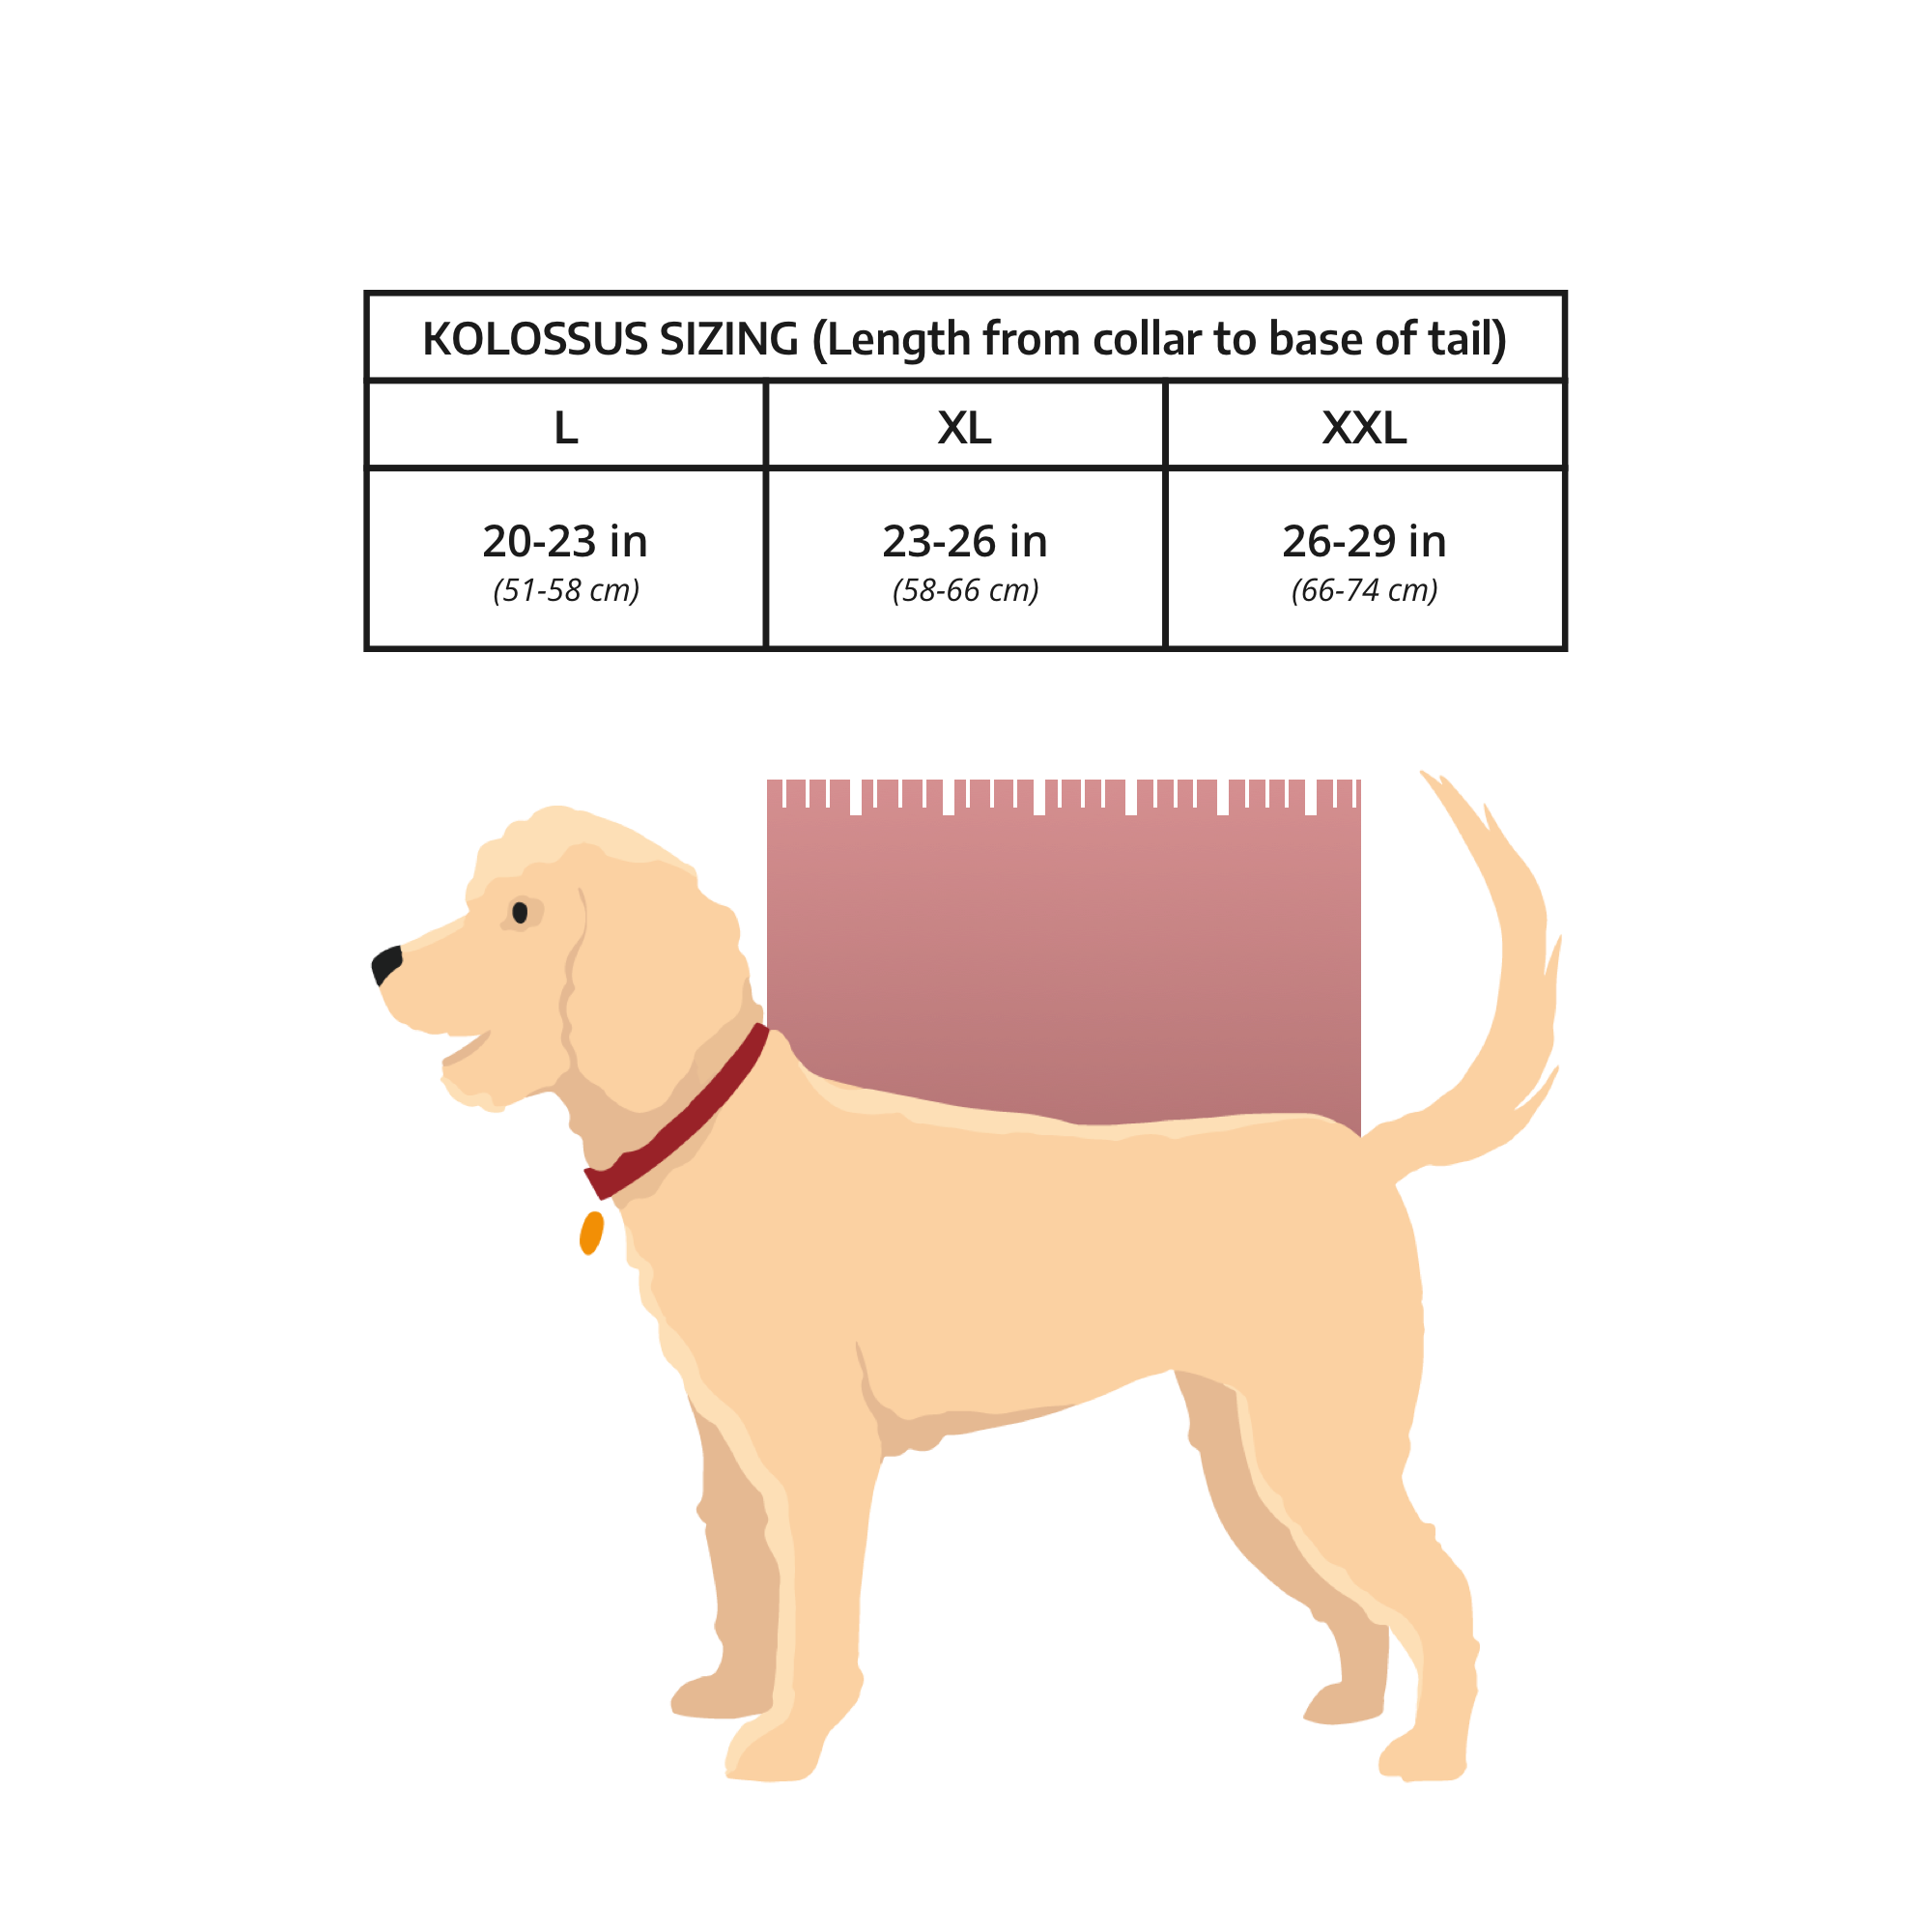 Colosse | Grand sac de transport pour chien et sac à dos